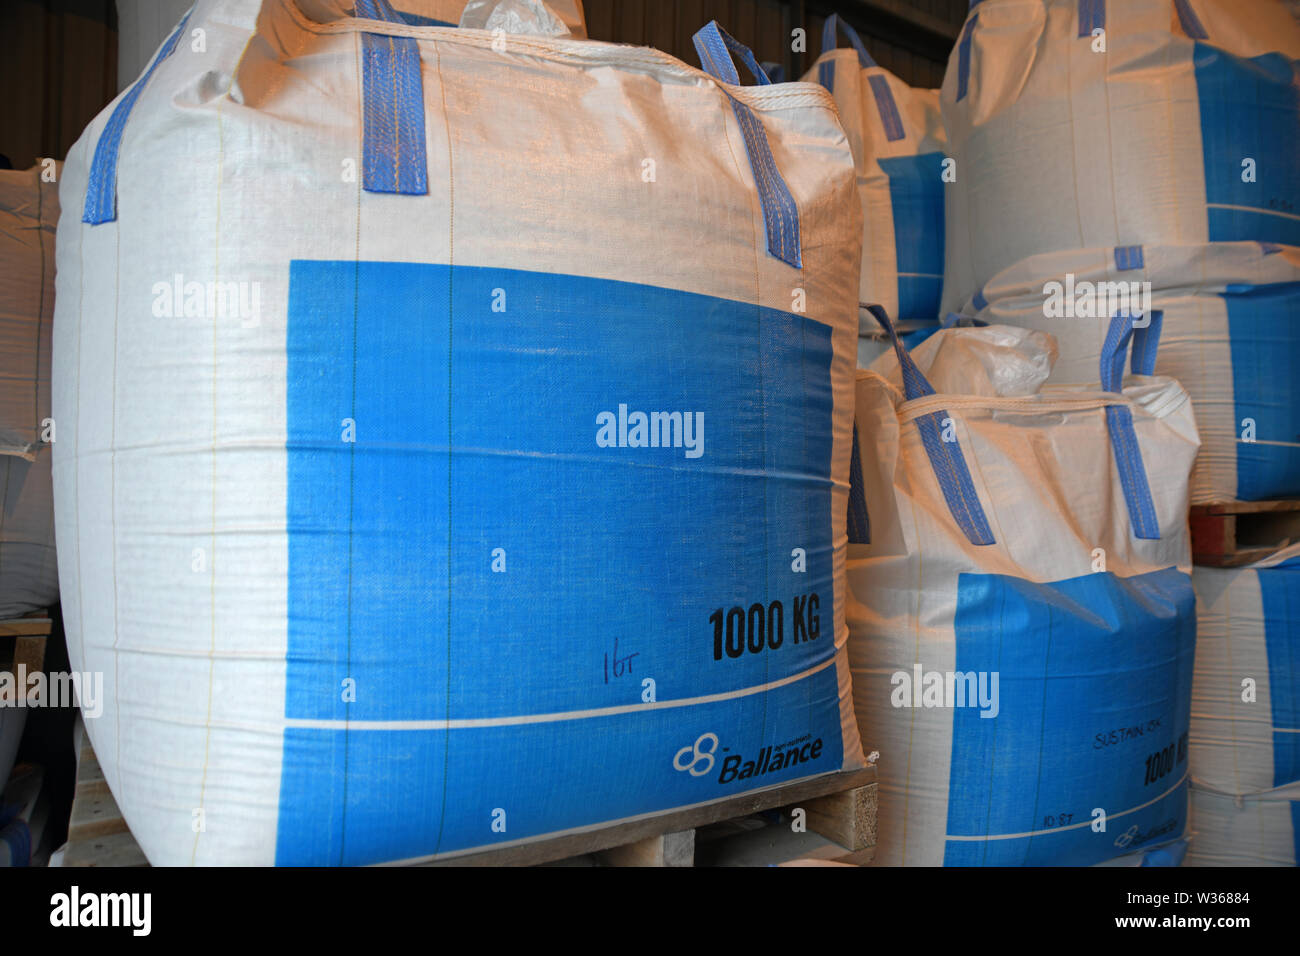 CHRISTCHURCH, NEW ZEALAND, DECEMBER 12, 2018: A cubic metre bag of bulk fertiliser awaits shipment at a factory. Stock Photo